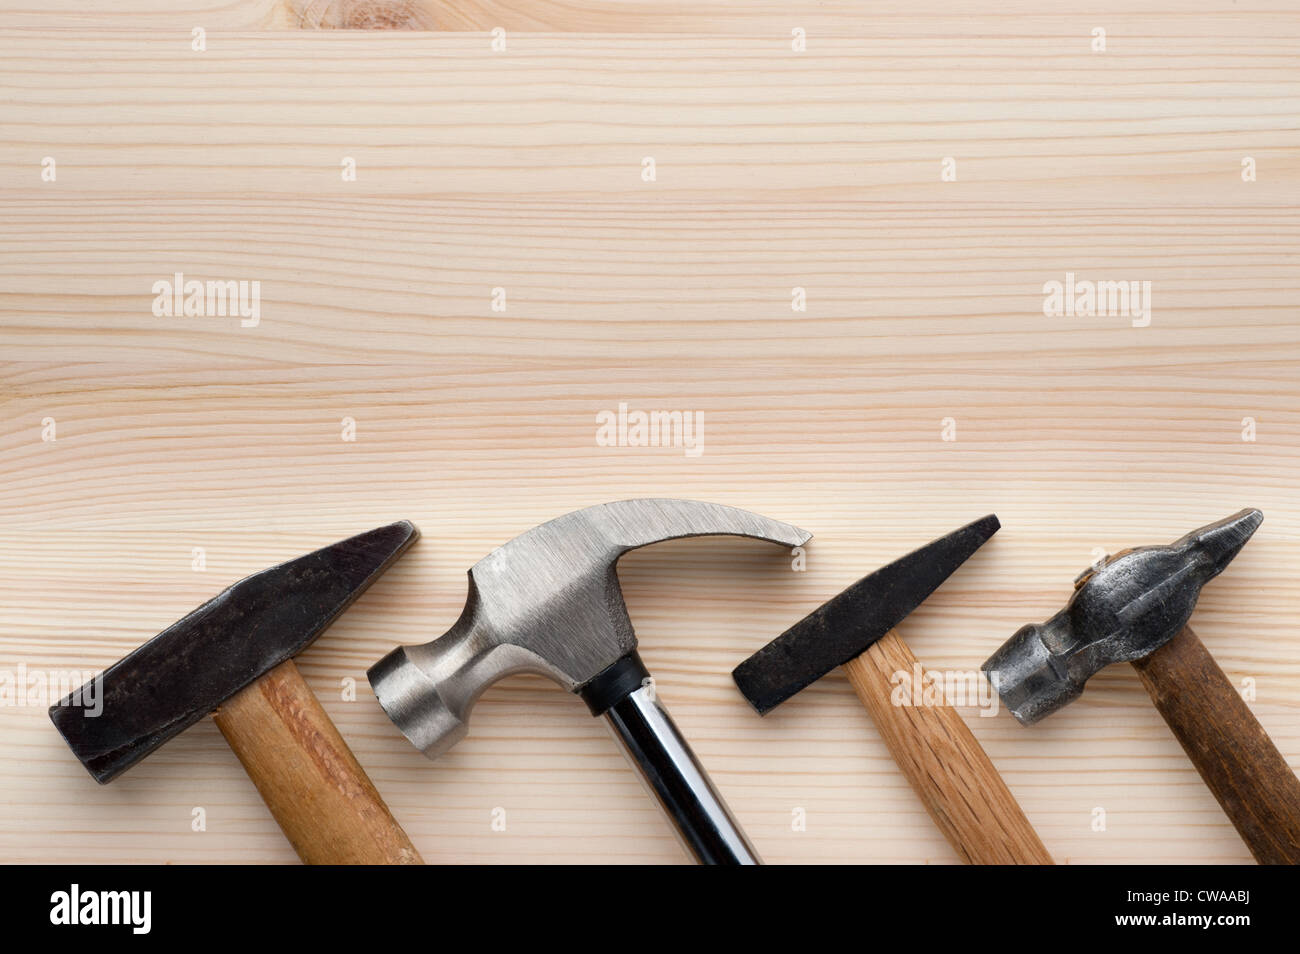 Marteaux assorties disposées sur une surface en bois. La construction, la réparation ou l'amélioration de l'arrière-plan. Banque D'Images